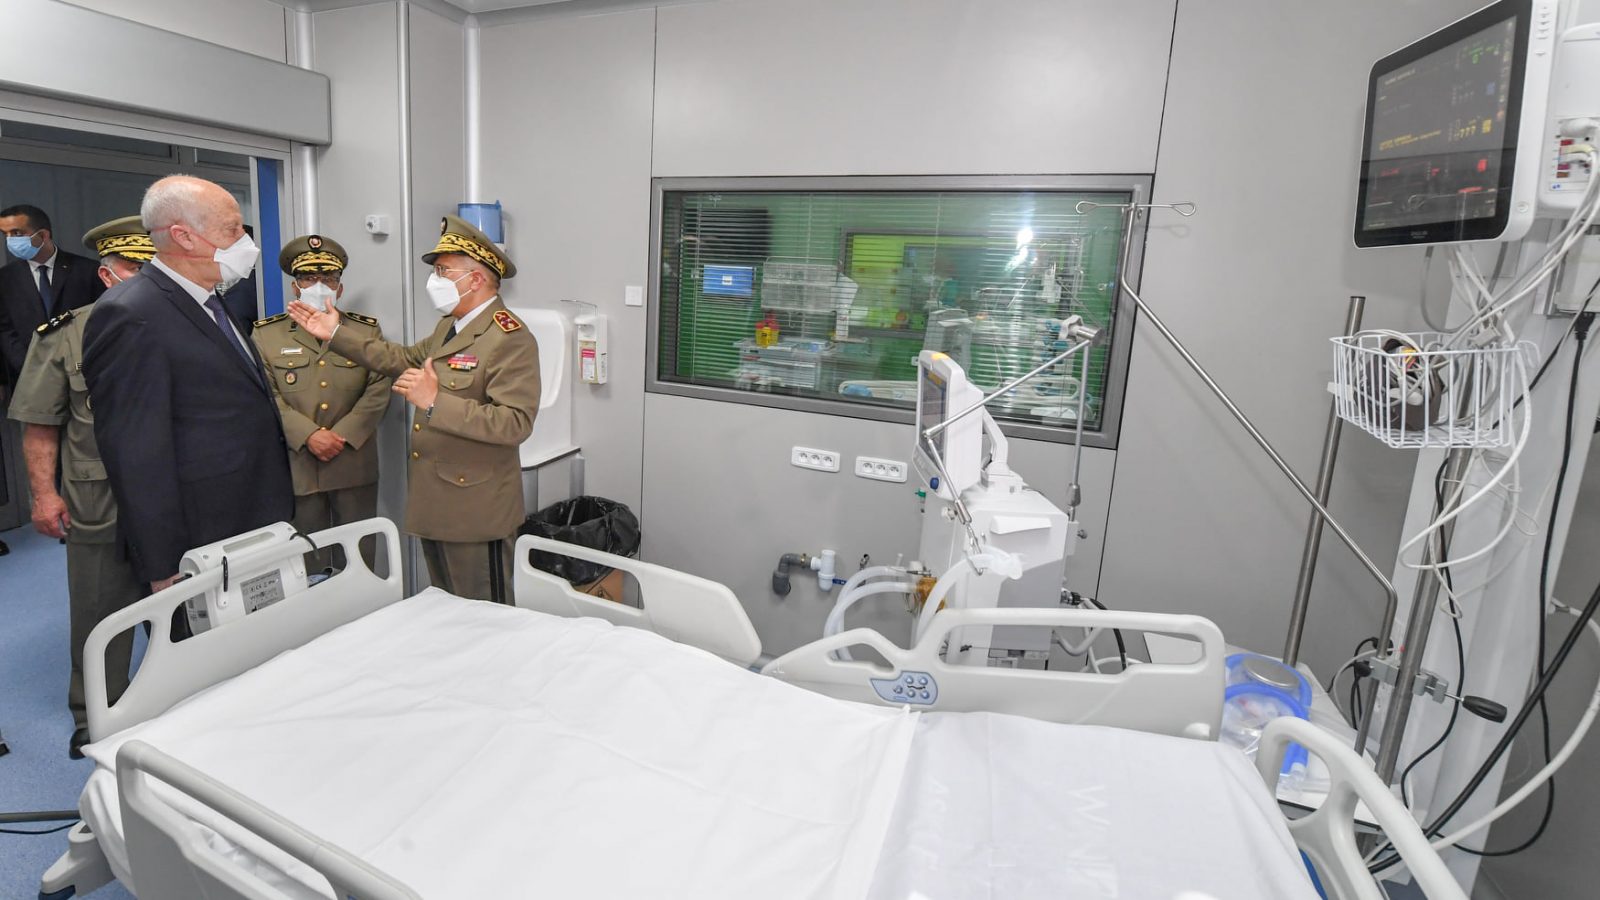 قيس سعيّد يدشن الجناح الجديد لقسم الإنعاش بالمستشفى العسكري (صور)